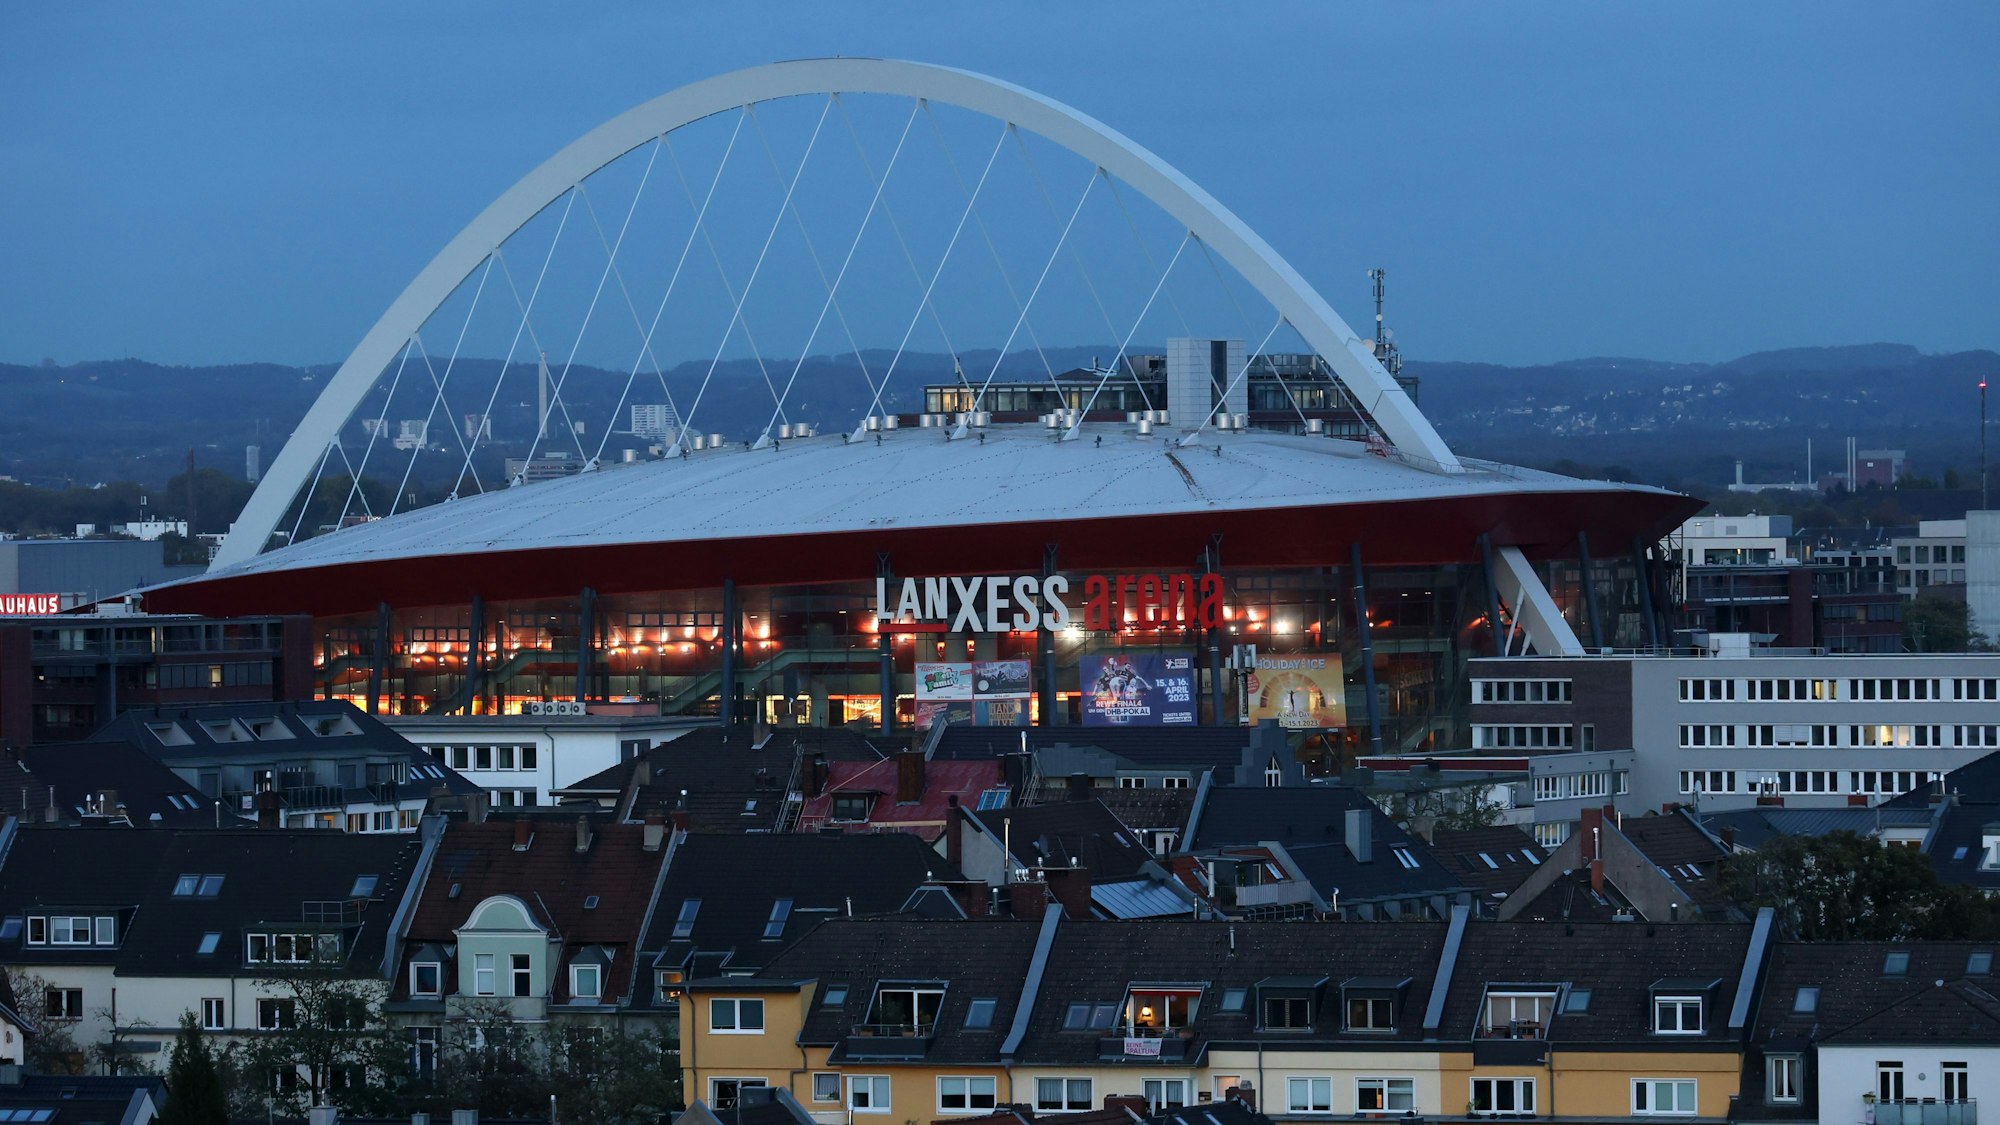 Die Lanxess-Arena in Köln-Deutz mit ihrem markanten Bogen.



